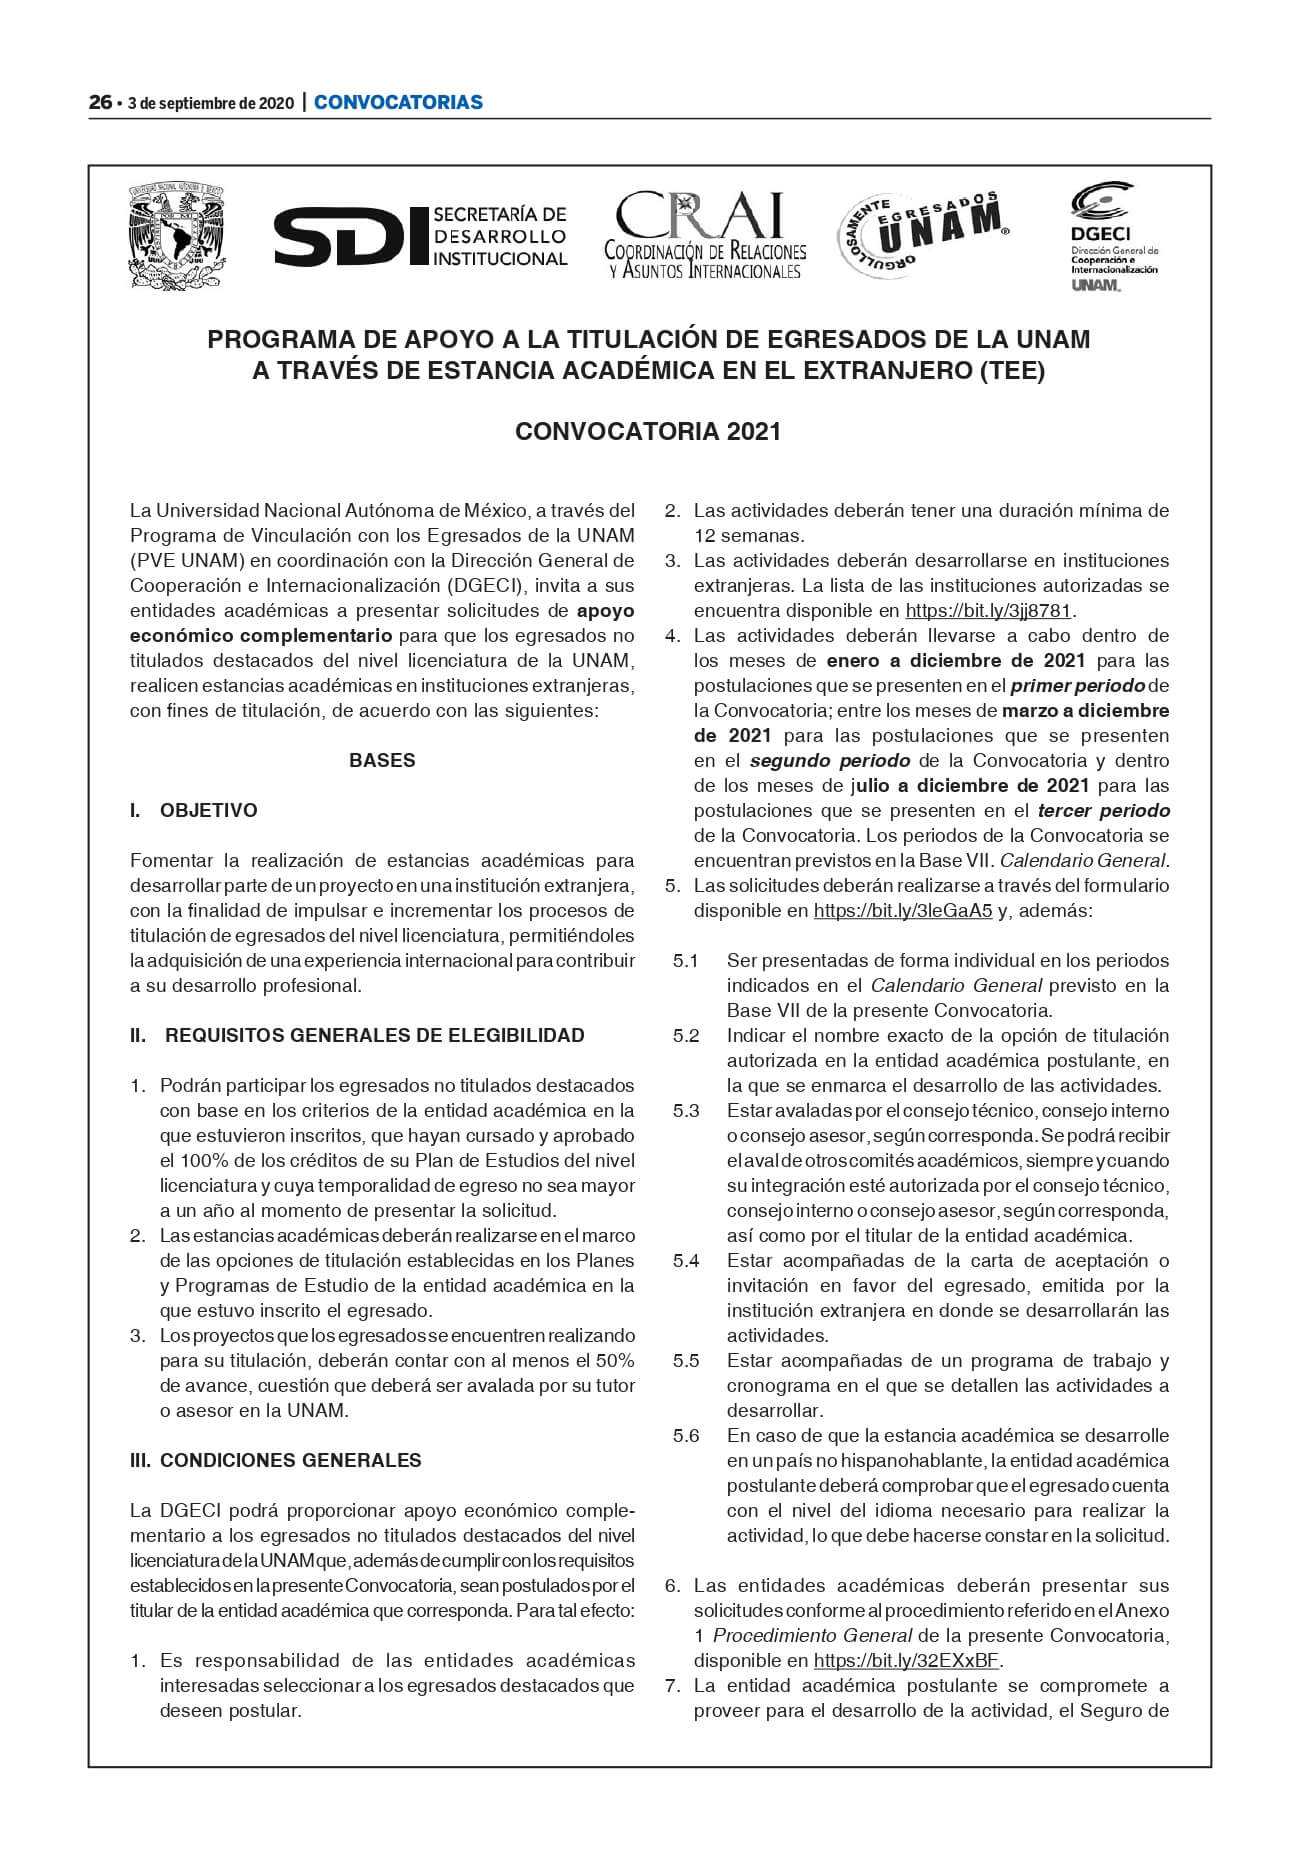 Convocatoria-Gaceta-TEE-2021_Estancias-academicas1.jpg#asset:5880